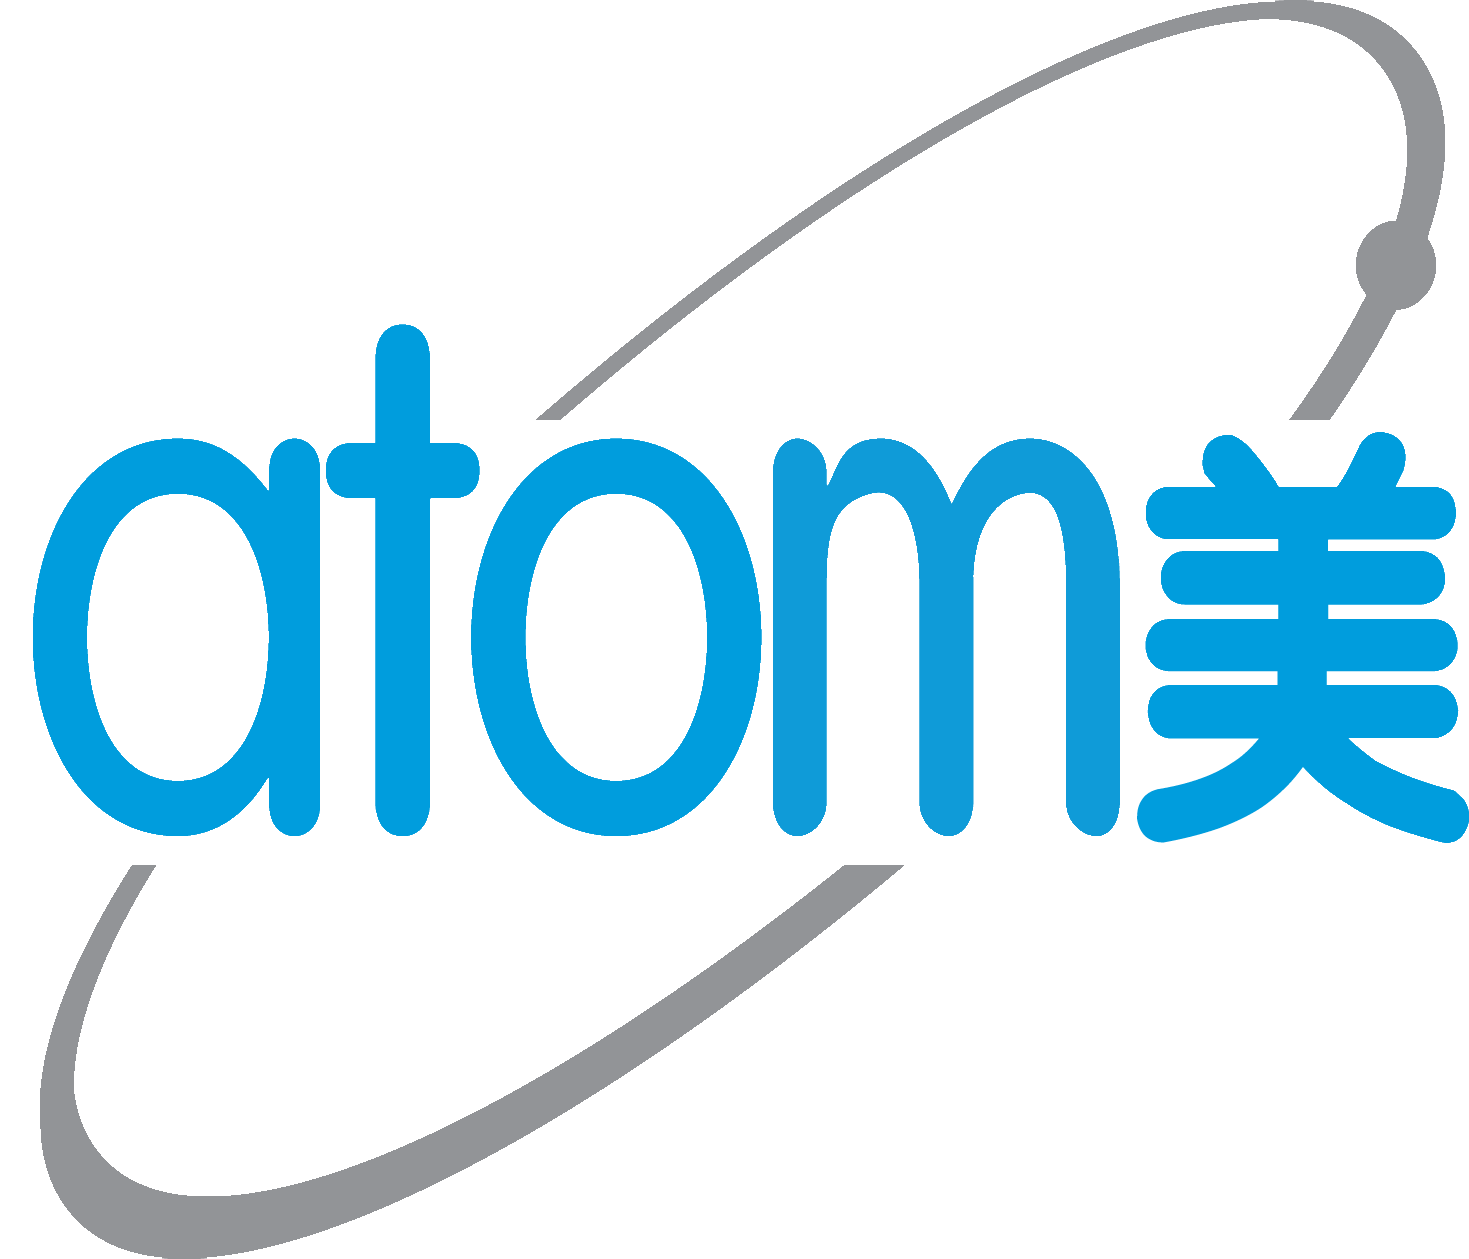 Atomylogo Atomy logo - Sticker by Jae Shim